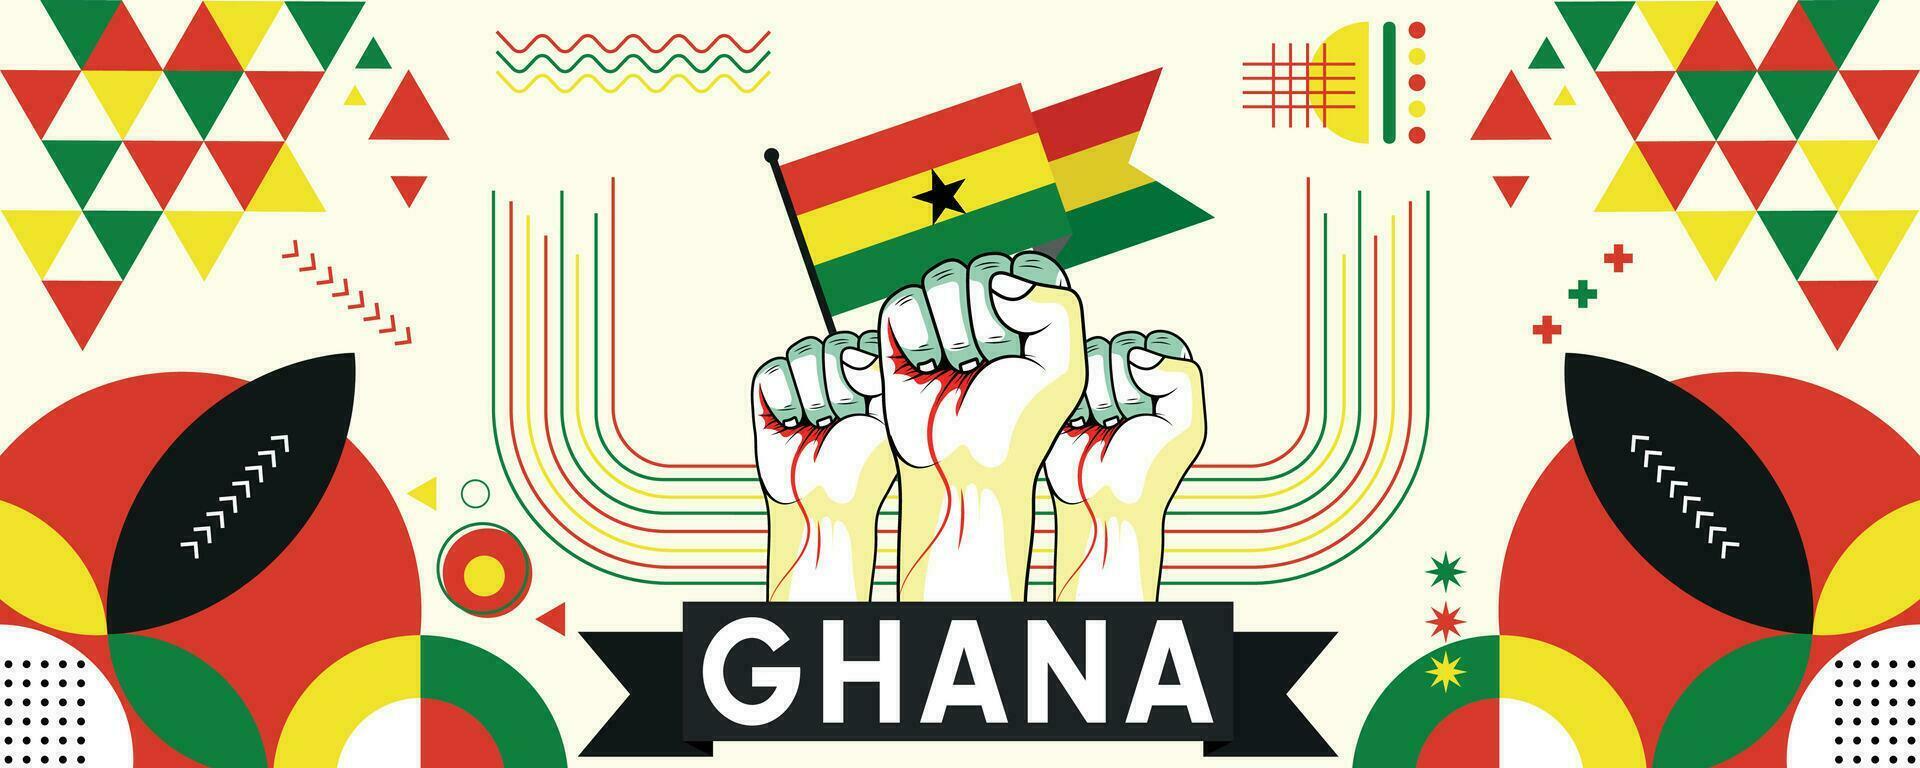 Ghana nazionale o indipendenza giorno bandiera per nazione celebrazione. bandiera di Ghana con sollevato pugni. moderno retrò design con typorgaphy astratto geometrico icone. vettore illustrazione.